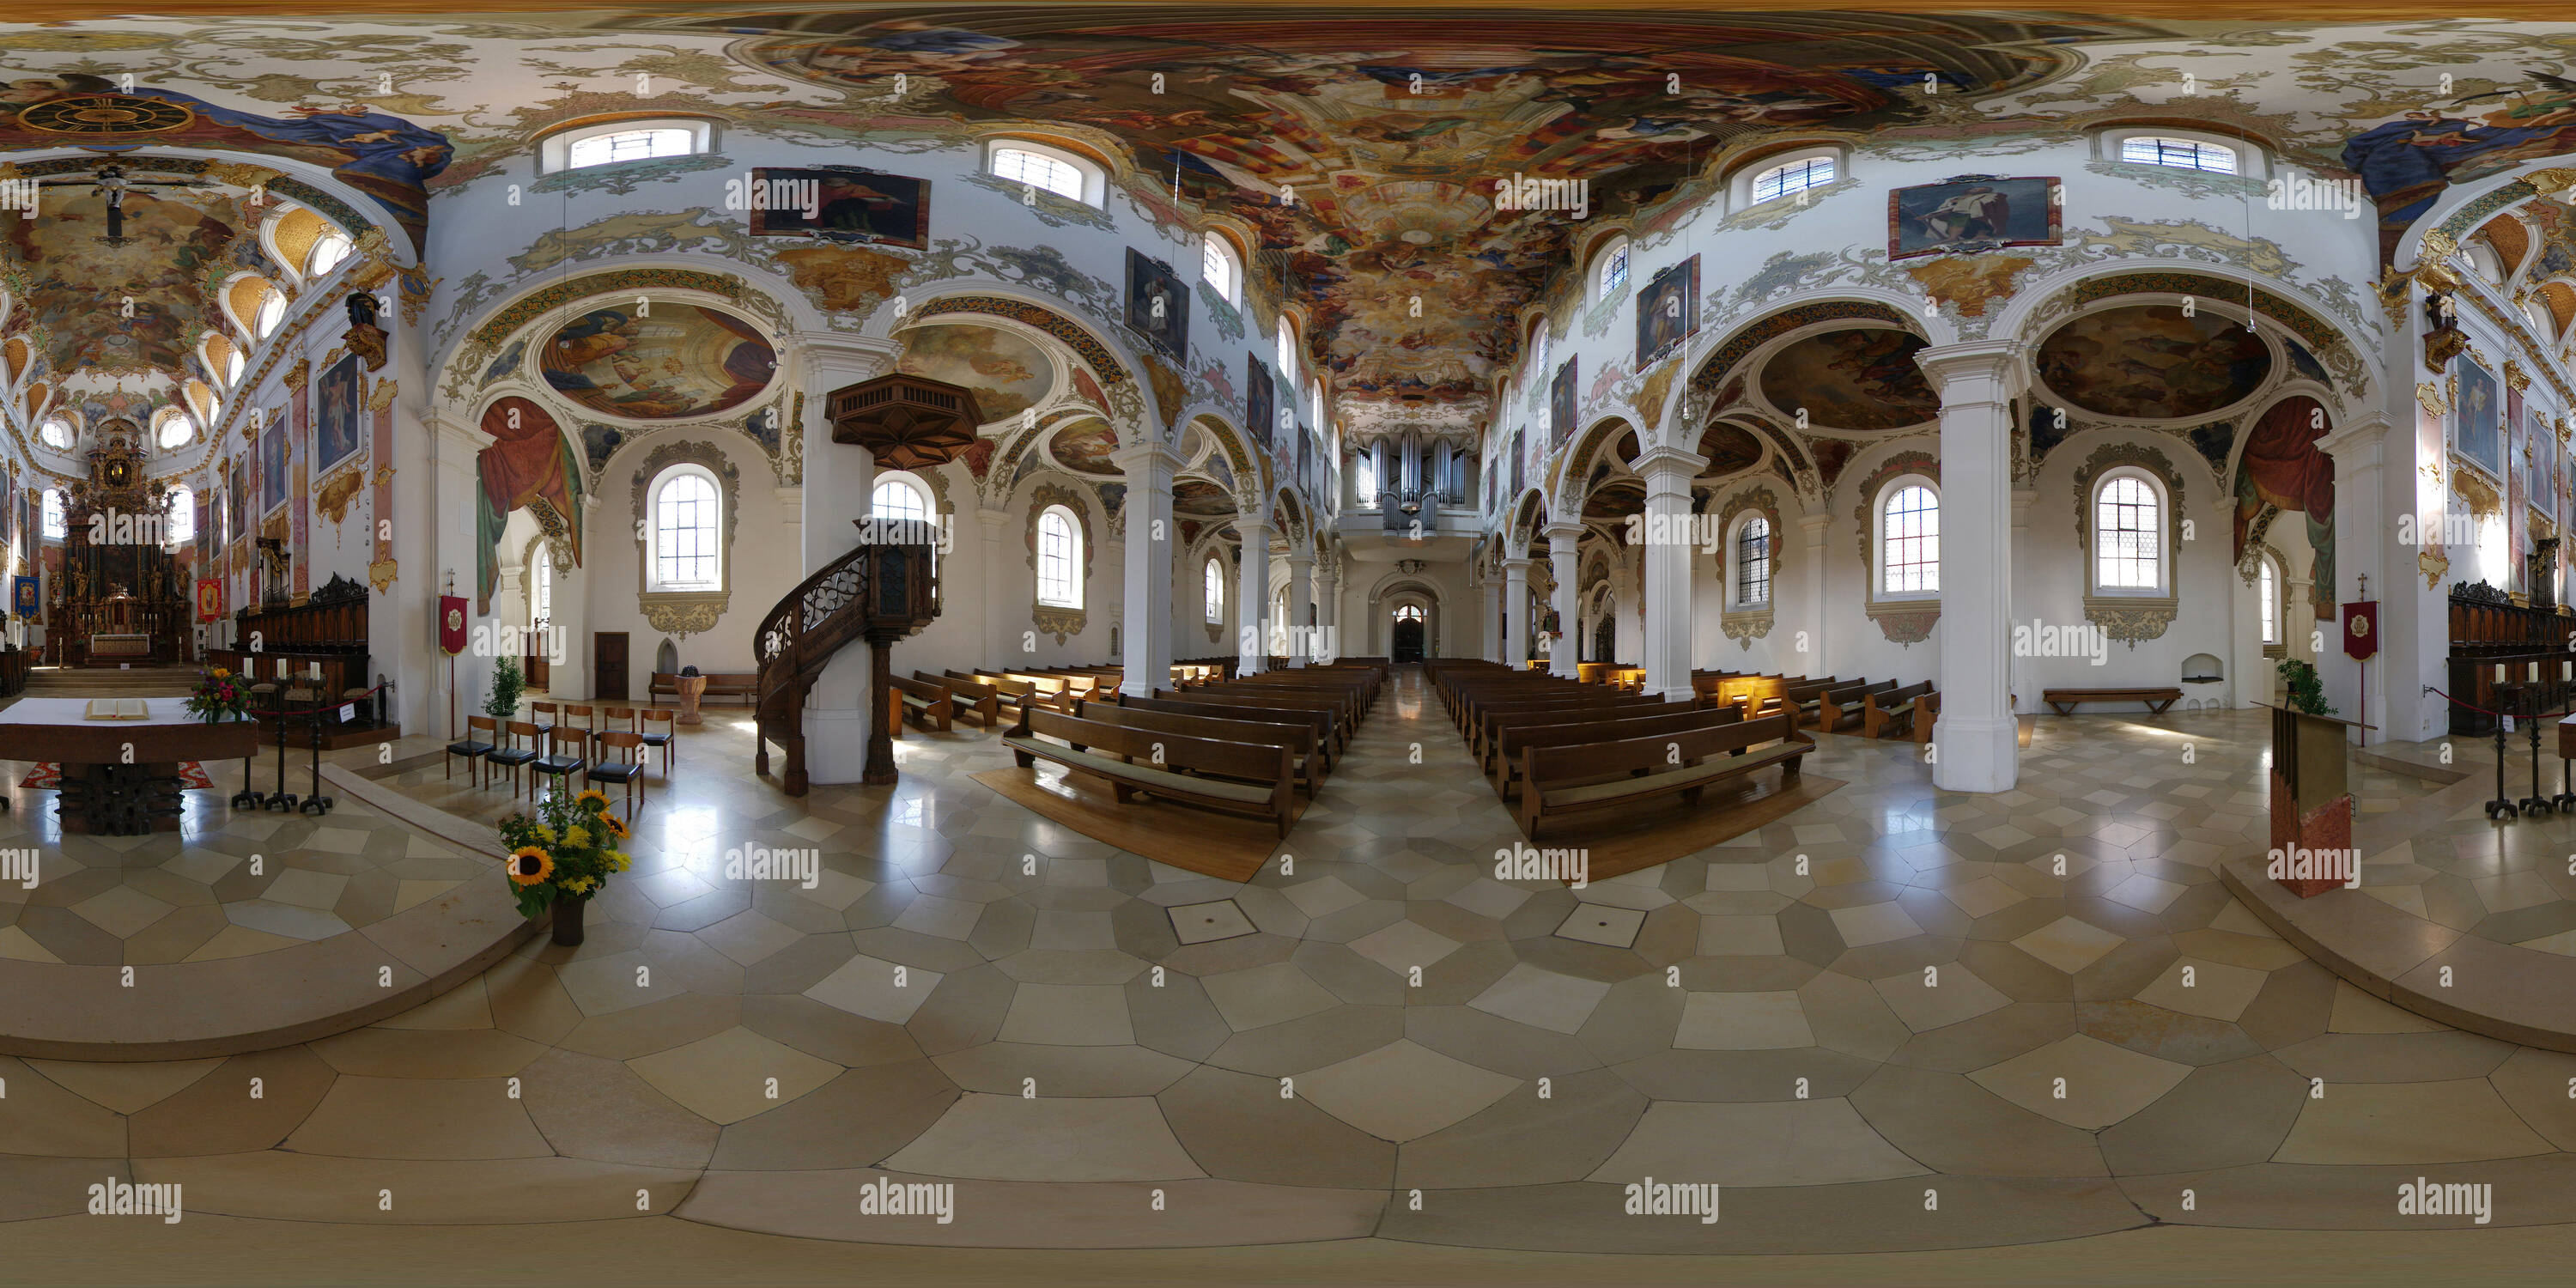 360 degree panoramic view of Kirche Biberach